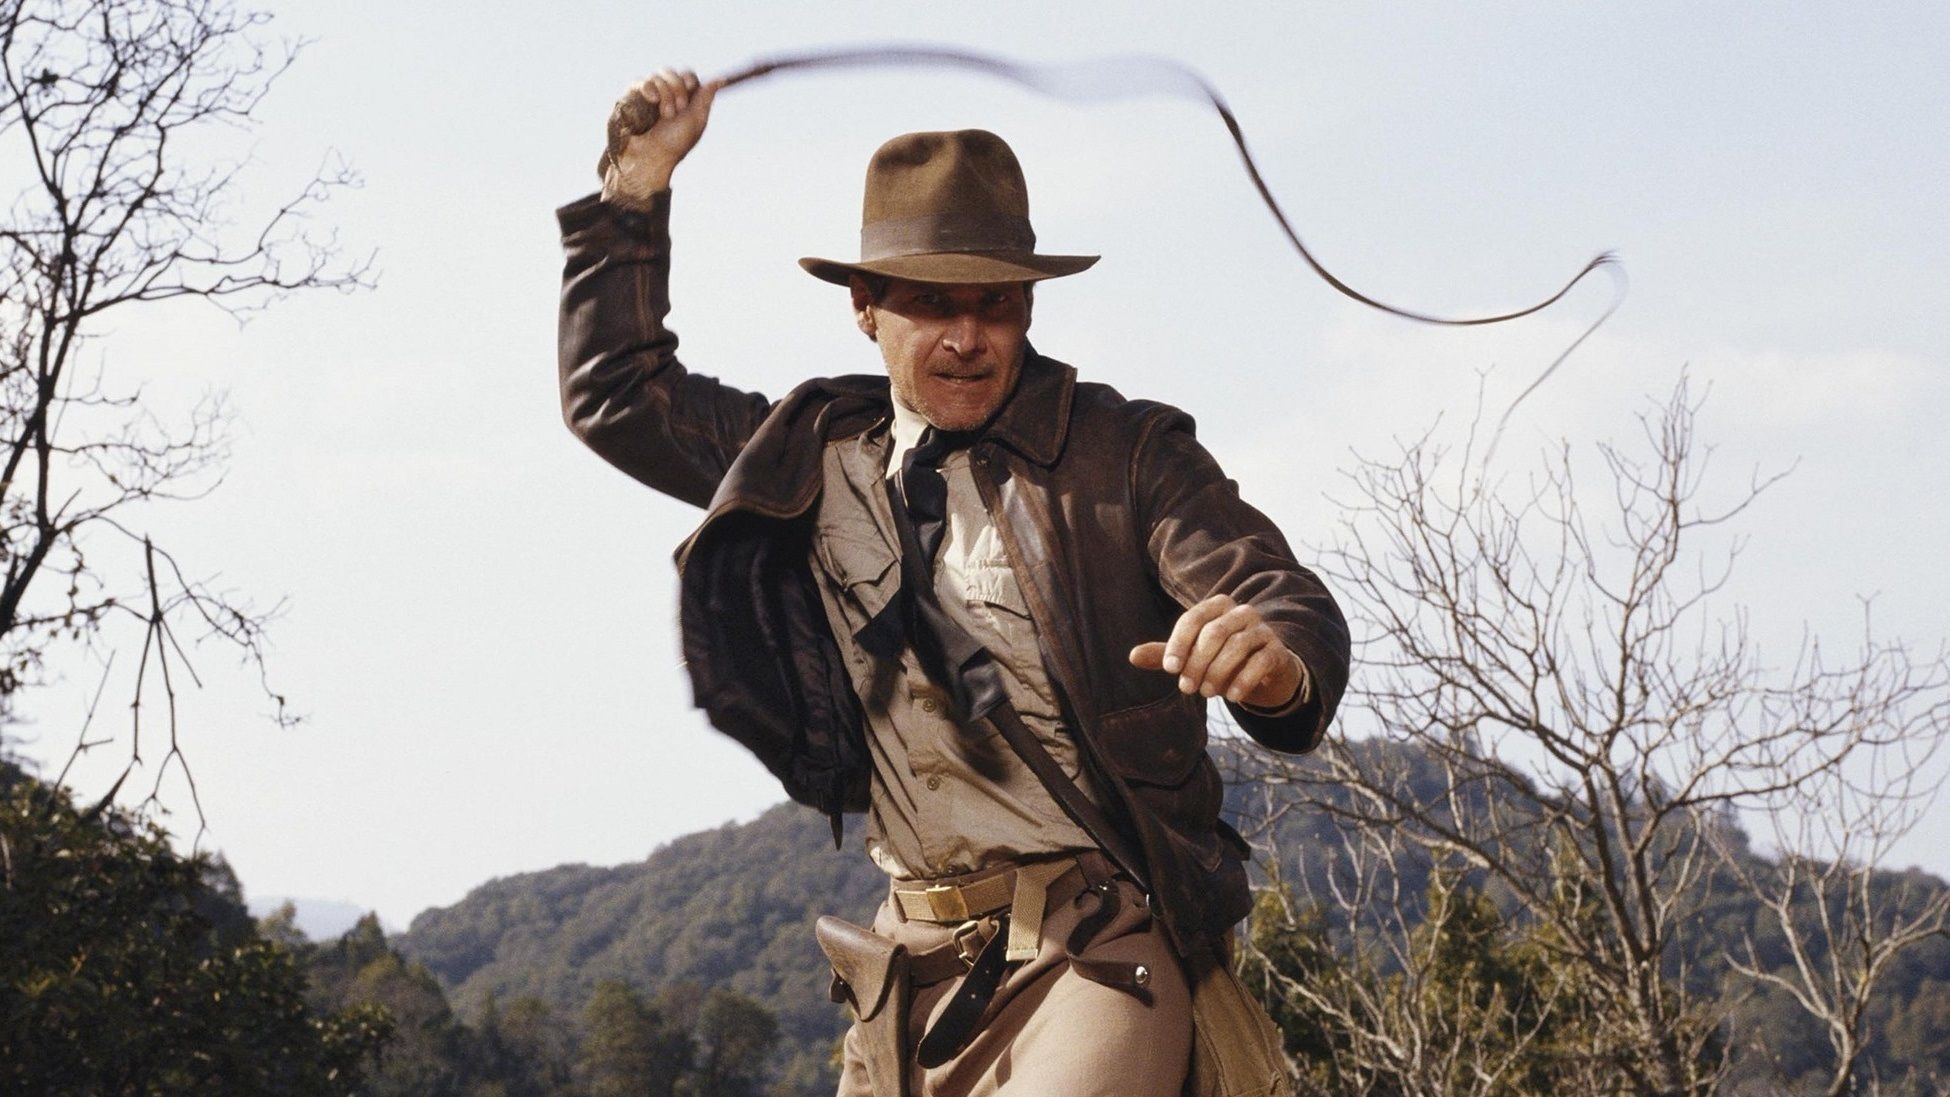 Rutas del cine andaluz: aquí se grabaron Indiana Jones, Juego de Tronos o Lawrence de Arabia